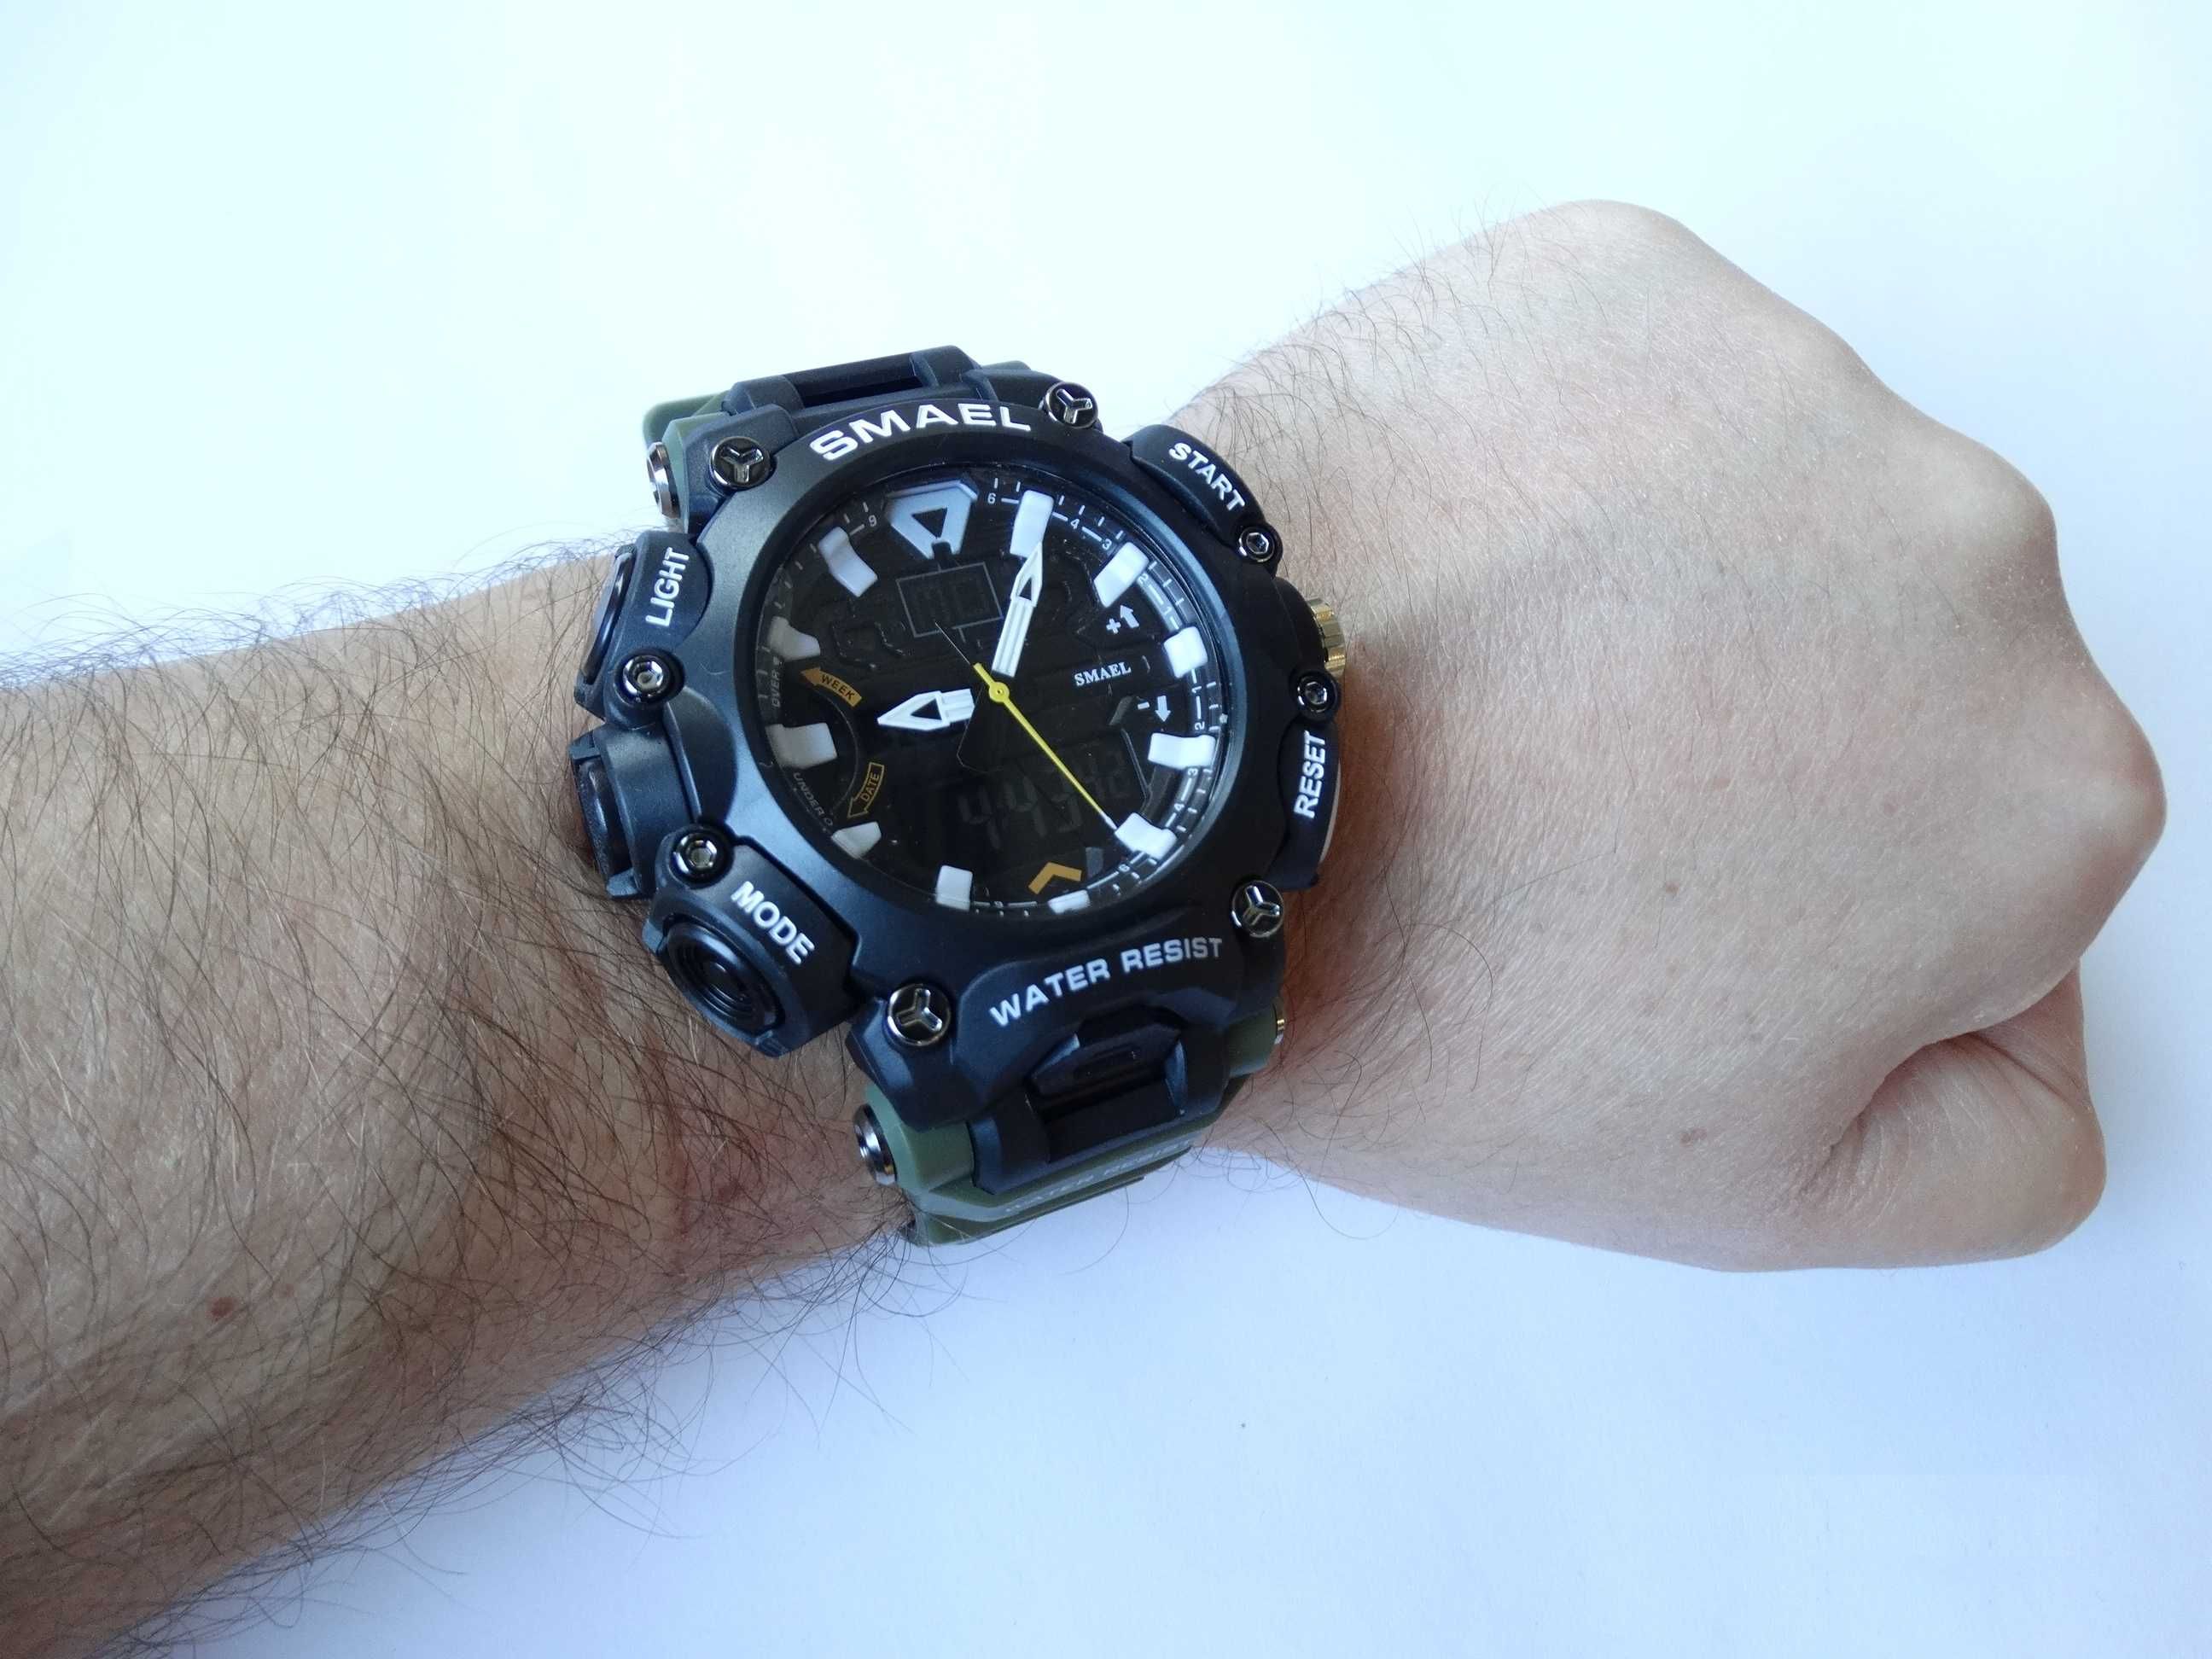 Duży militarny zegarek Smael cyfrowy elektroniczny sportowy wojskowy